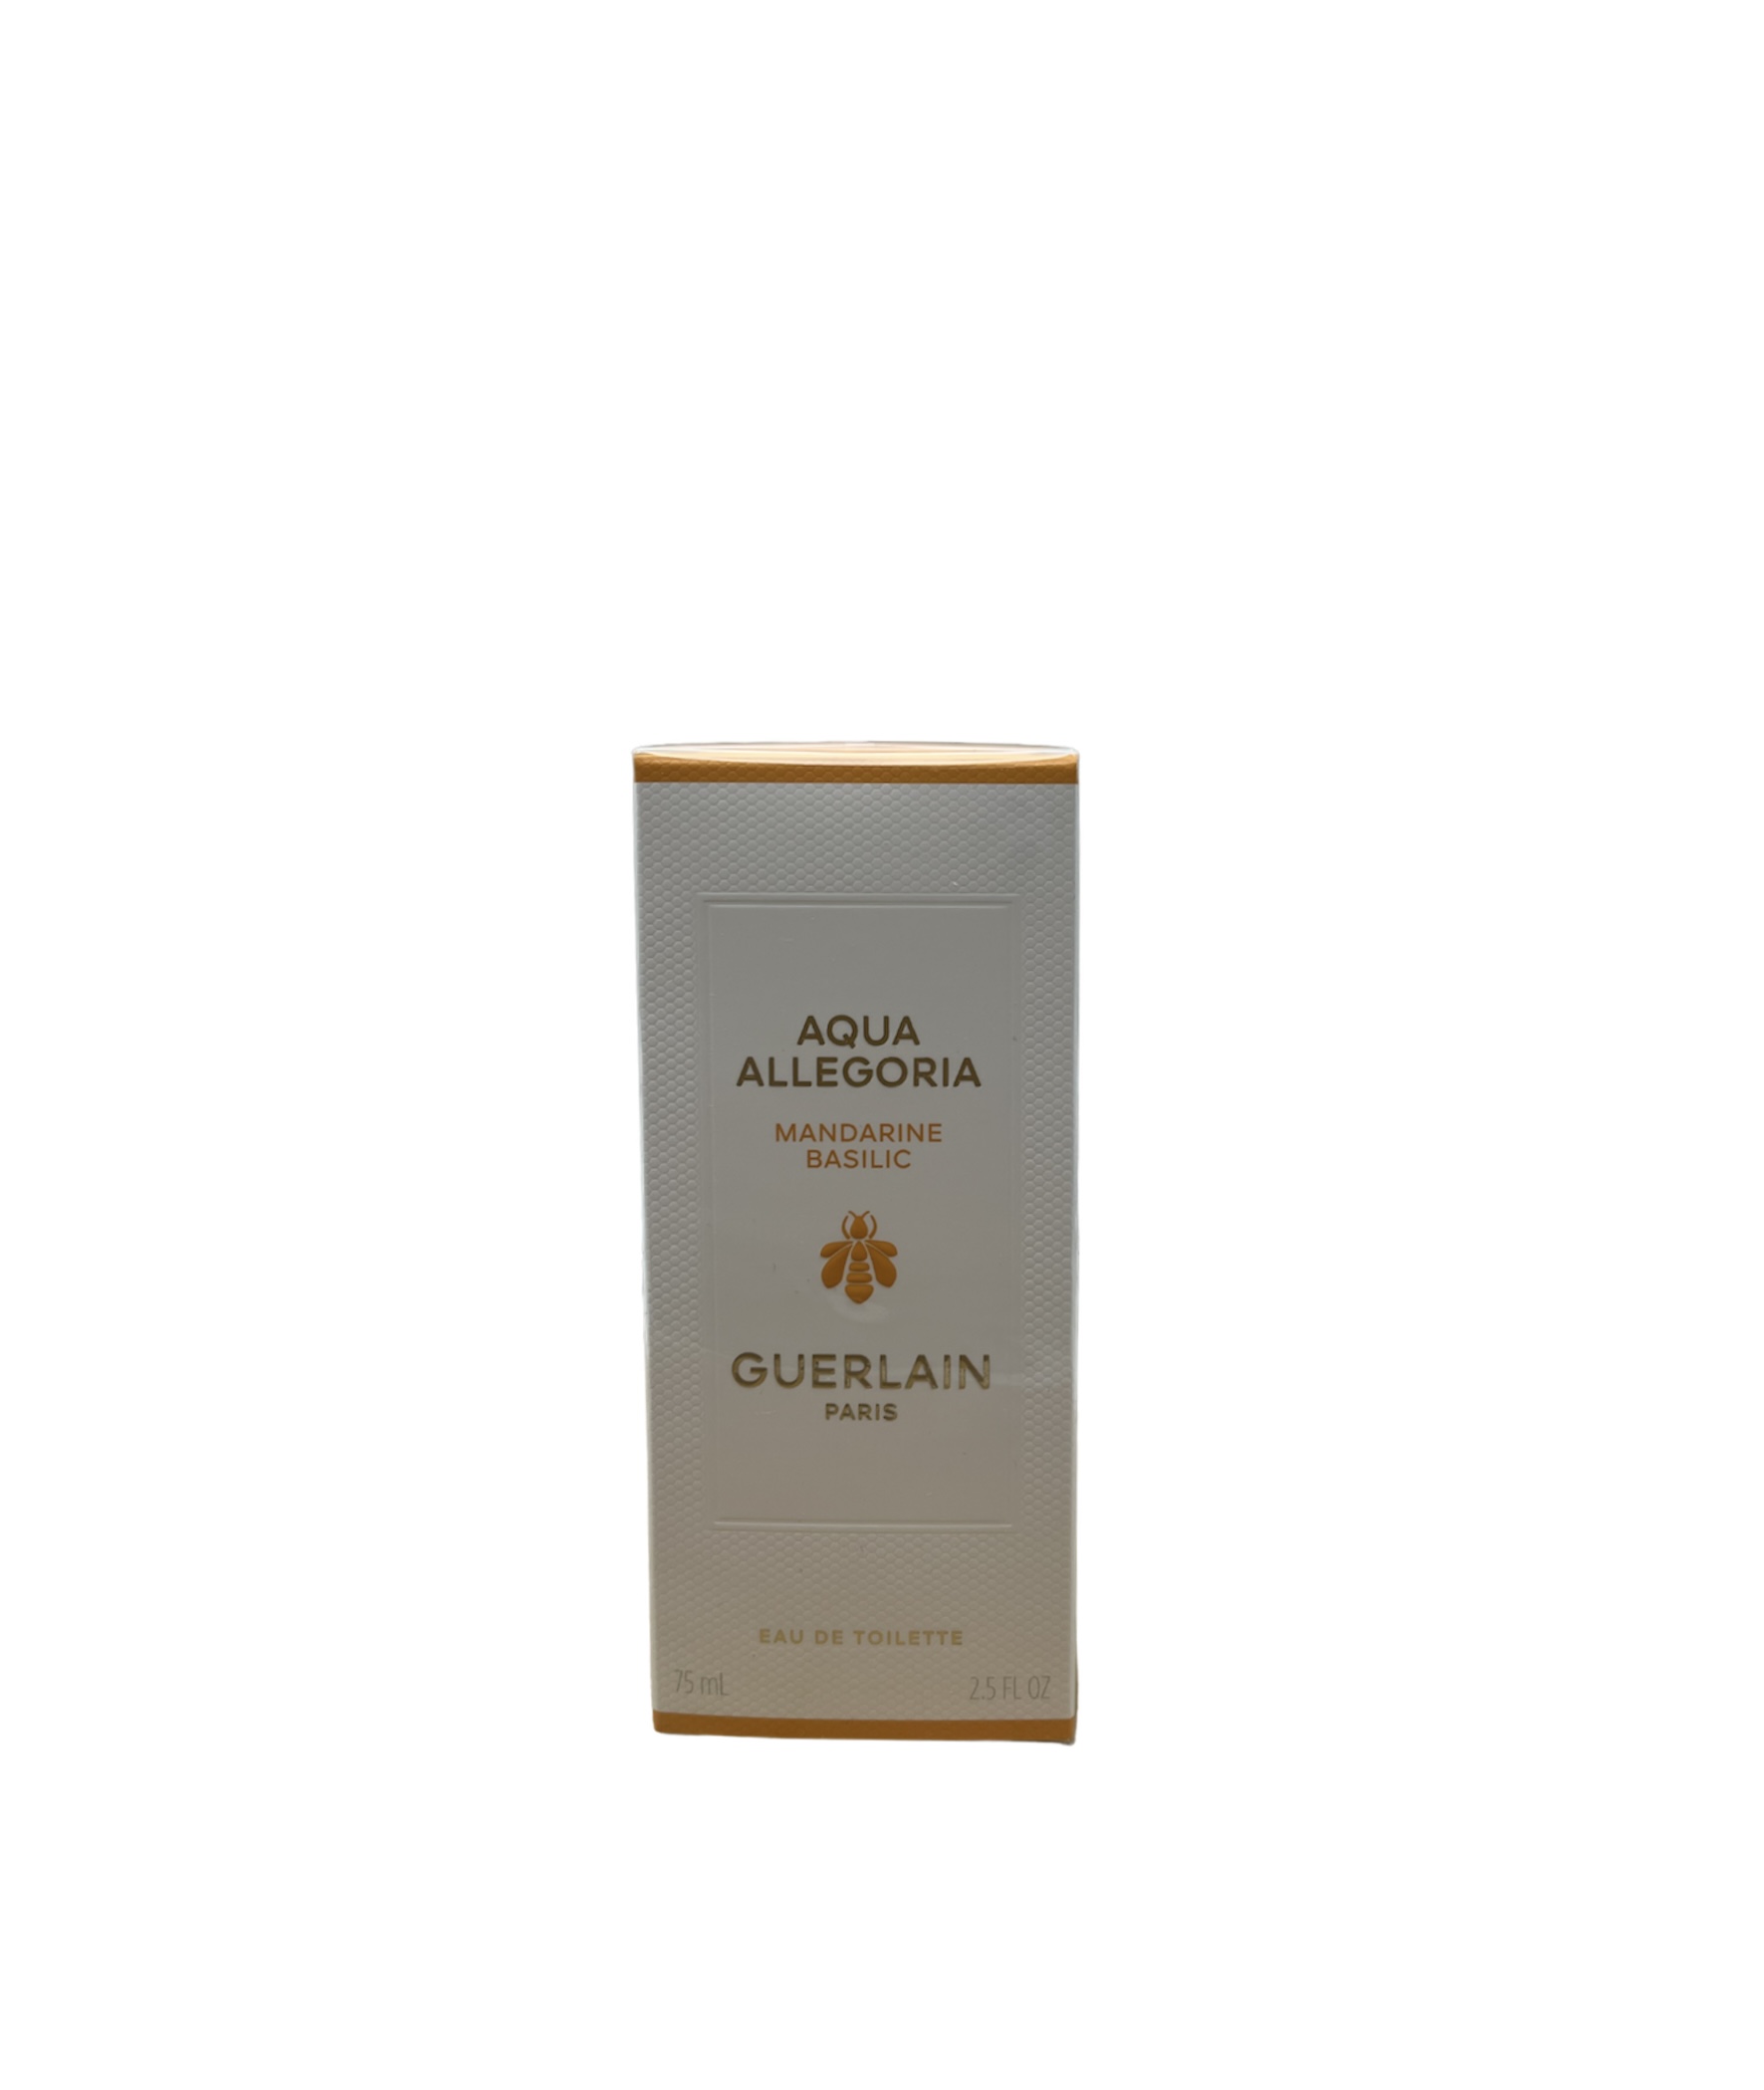  Guerlain Aqua Allegoria Mandarine-Basilic Eau de Toilette 75ml 